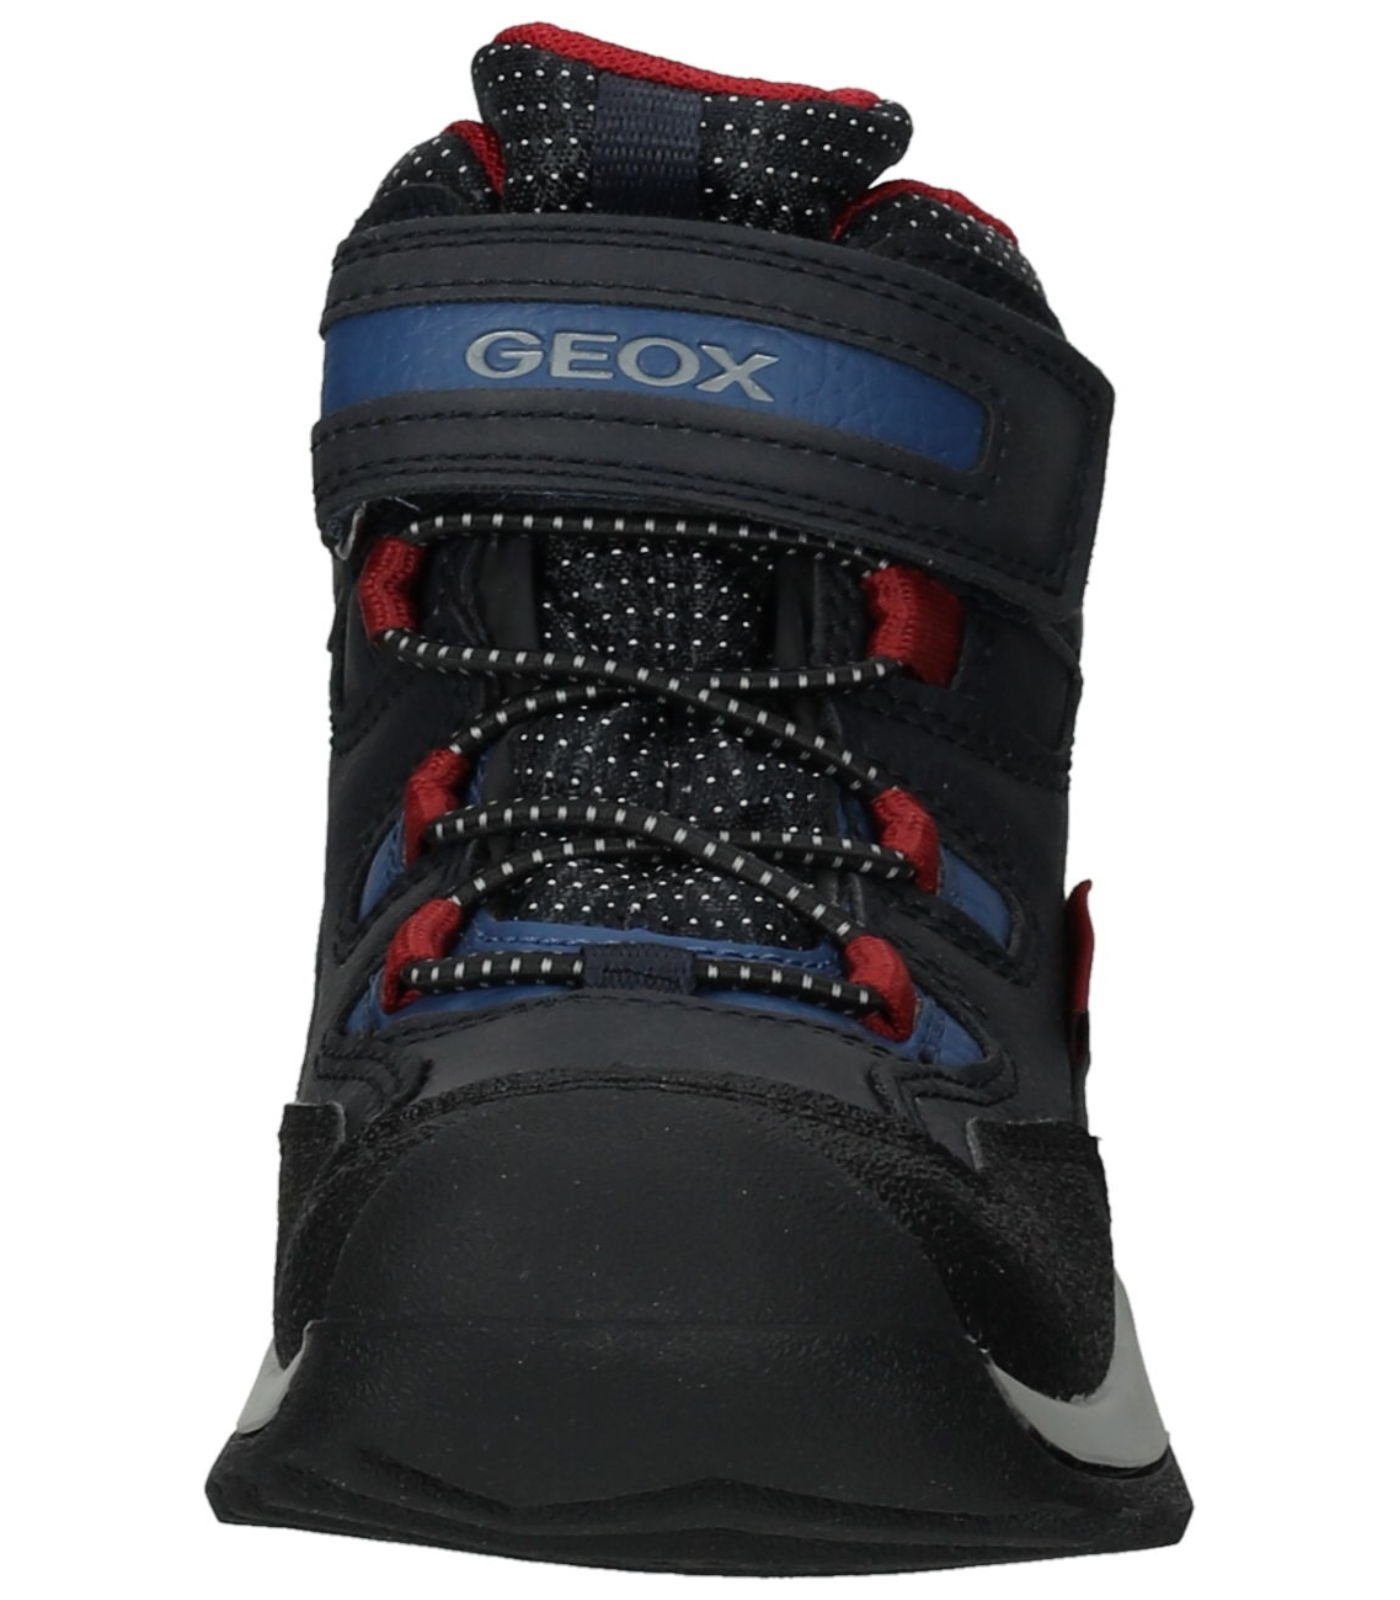 Blau RED) Geox Stiefelette Lederimitat/Textil (NAVY/DK Schnürstiefelette